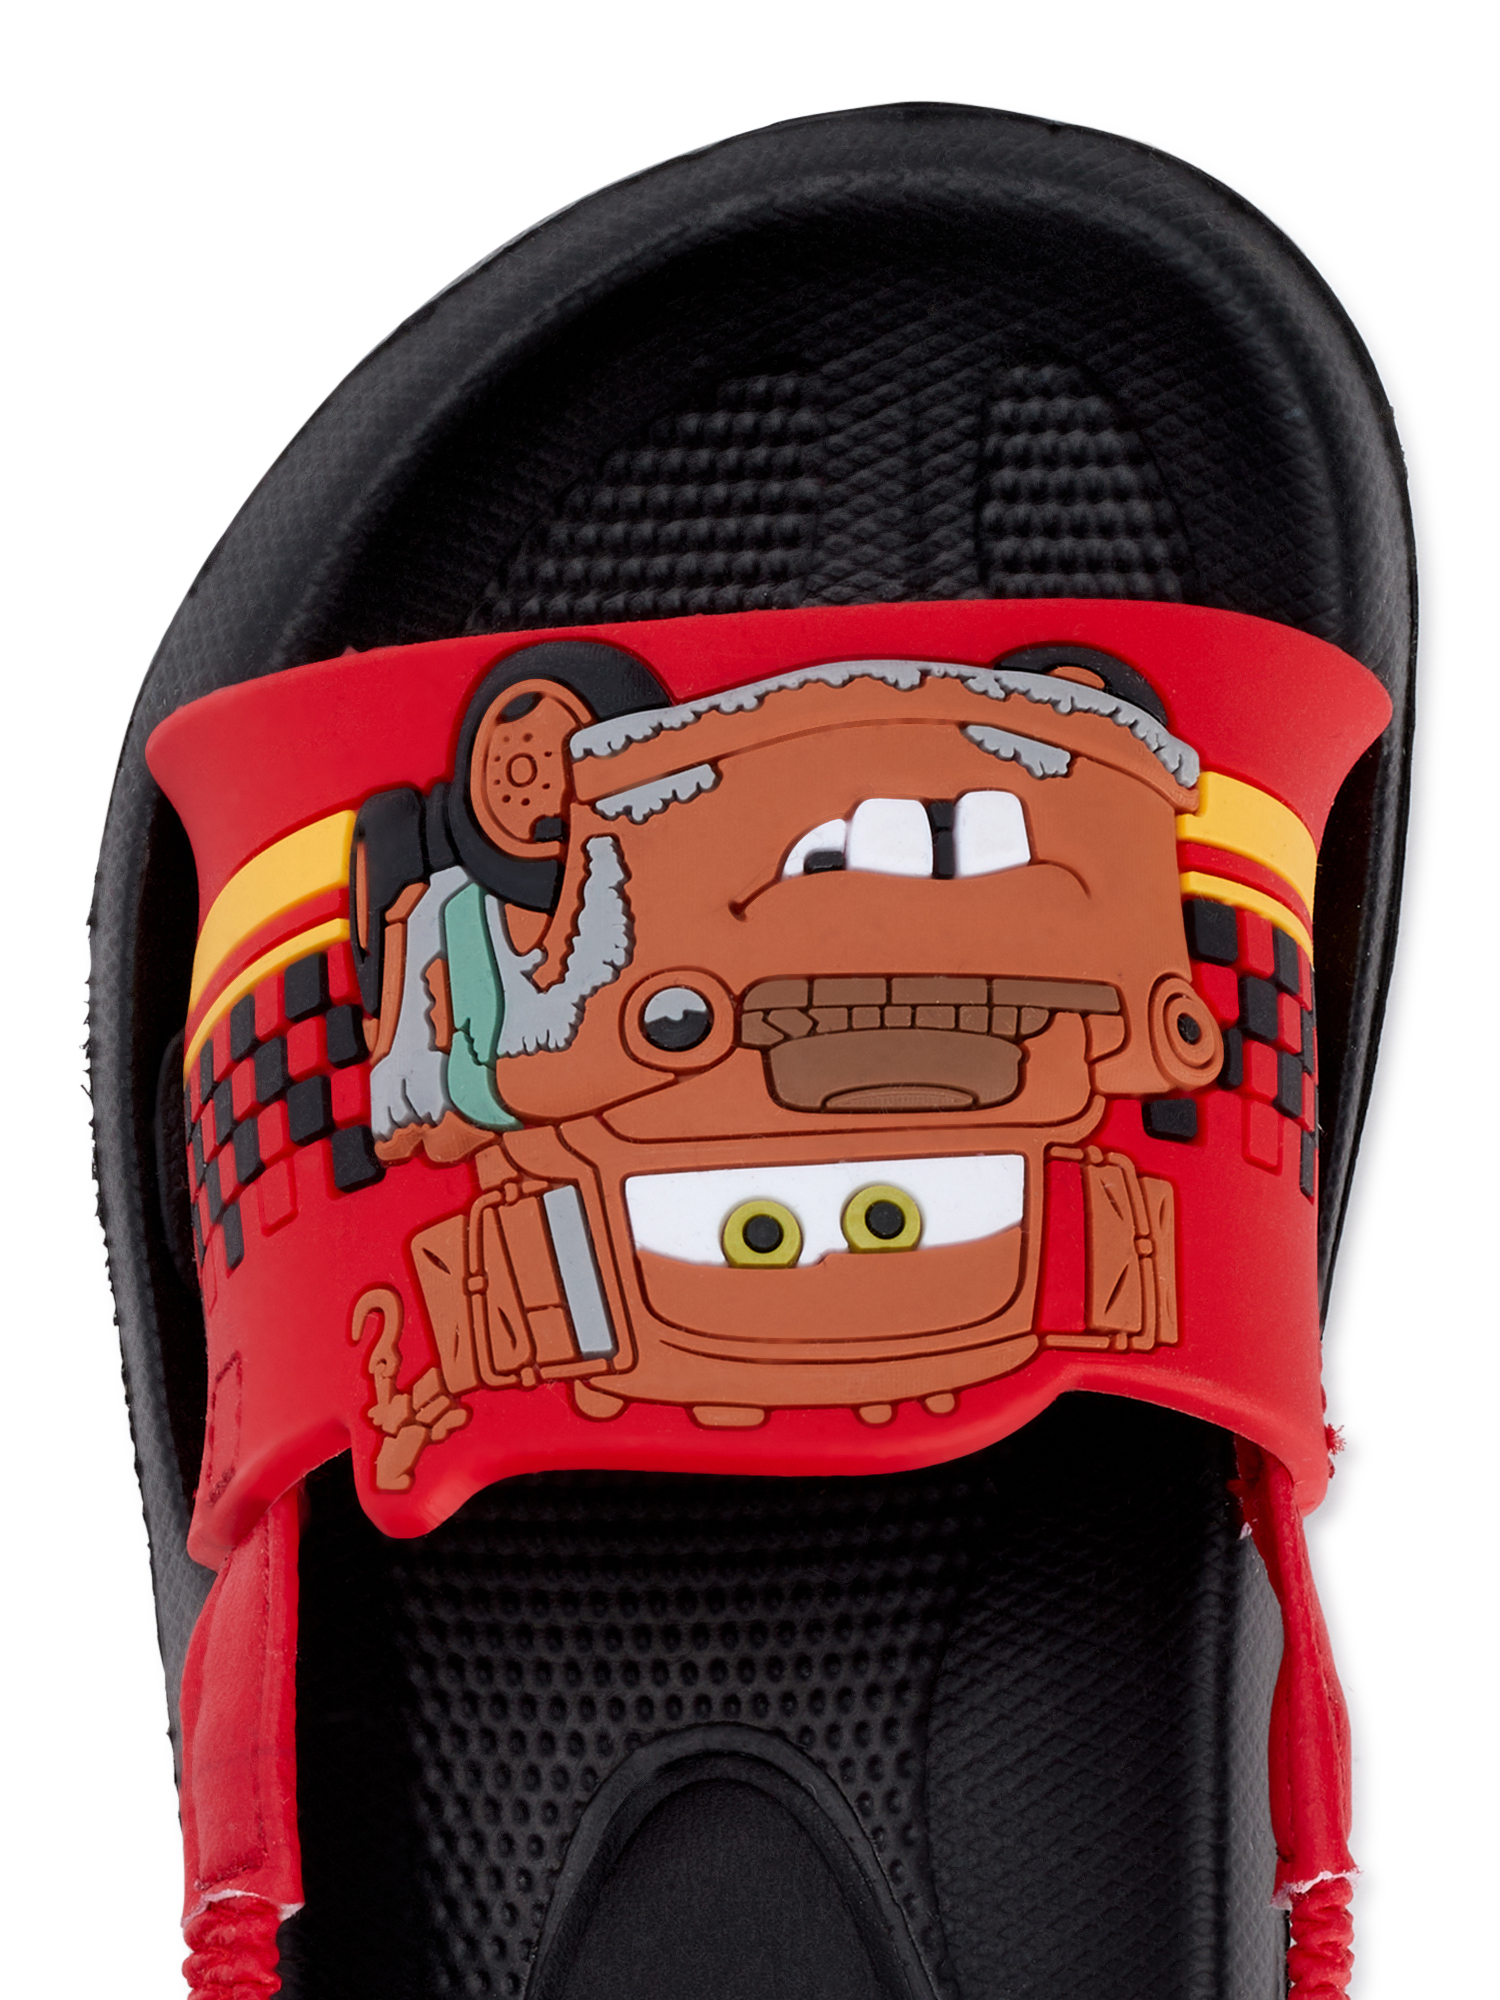 Cars Slide Sandal (Toddler Boys) - image 4 of 6